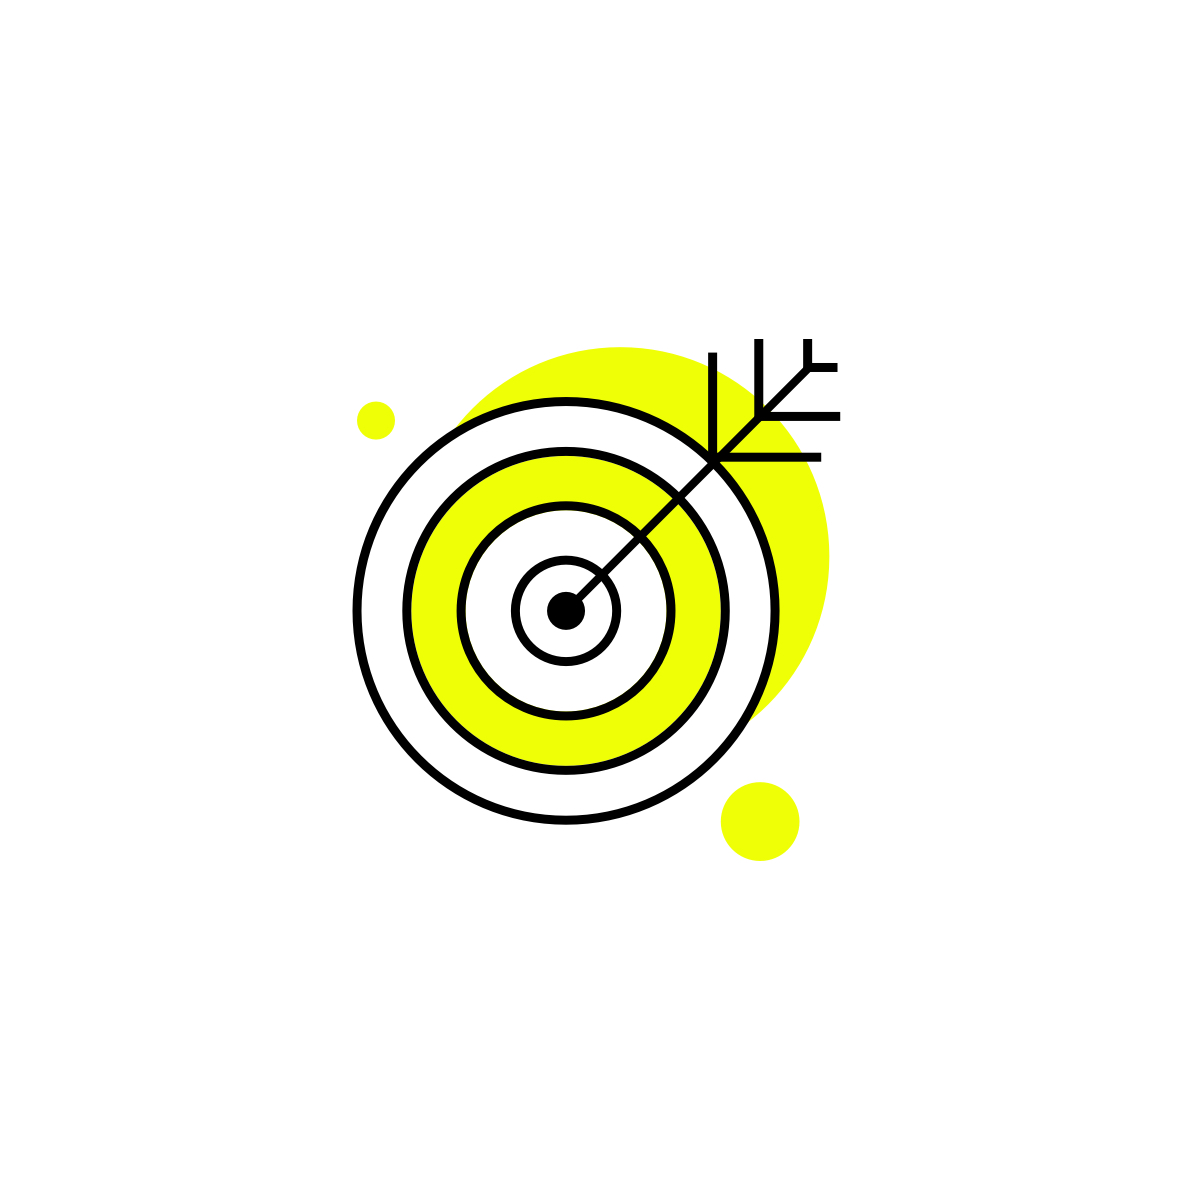 maj-lz-icon-simplicite-white-new-yellow-square@3x